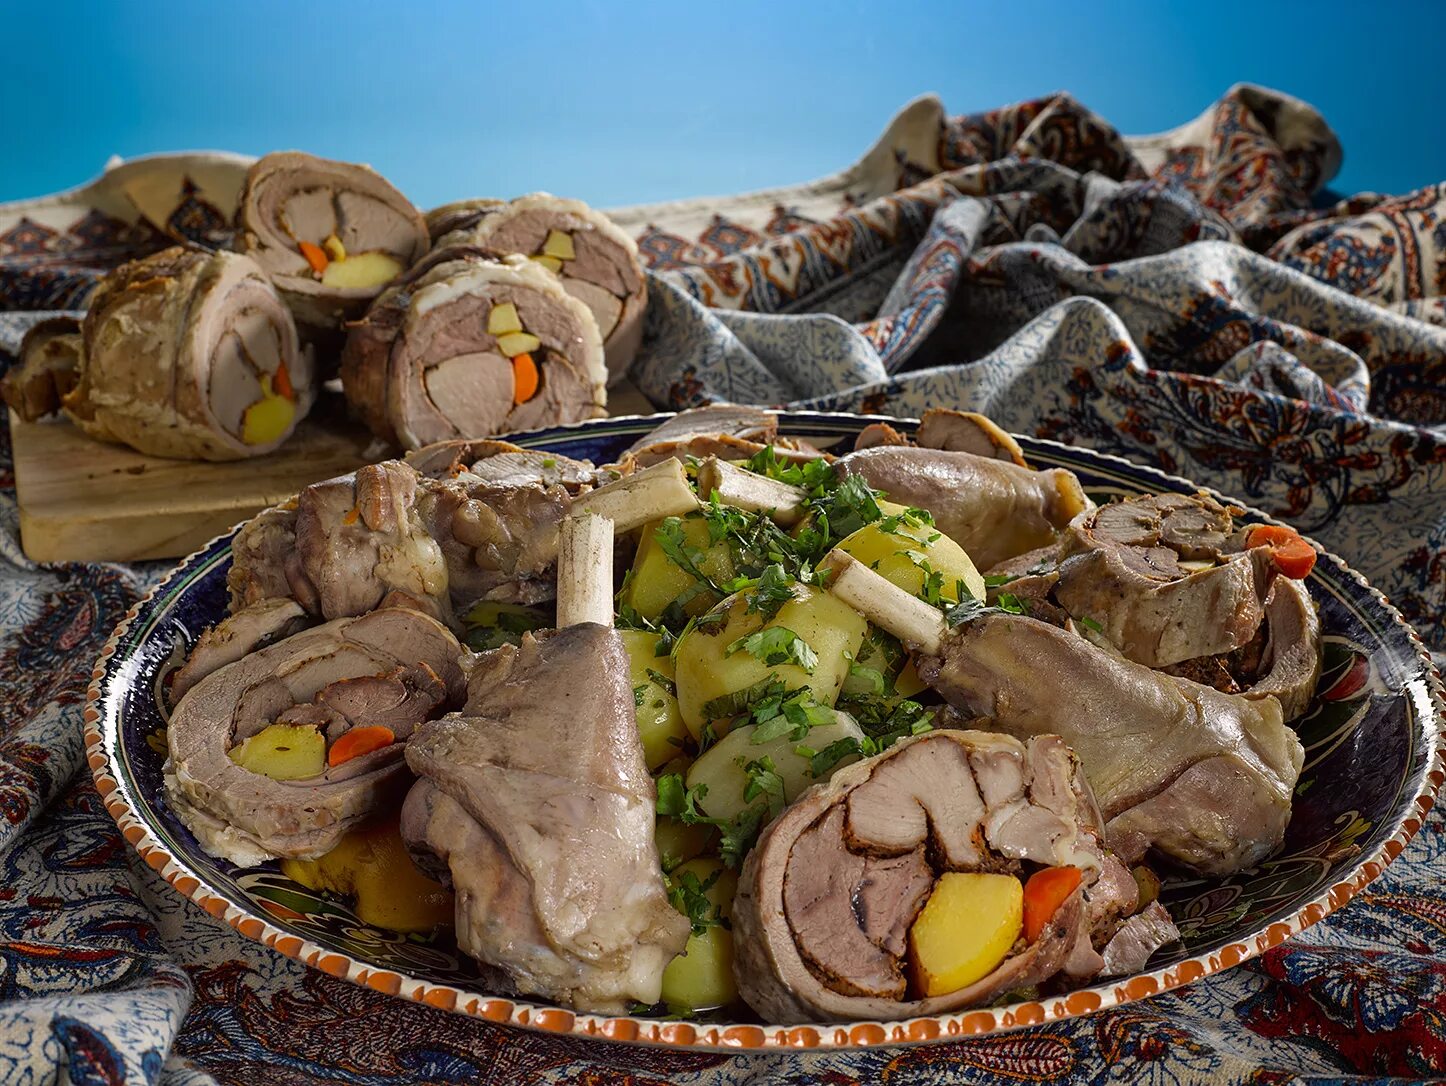 Национальная кухня мясо. Афганский куурдак. Соютма из баранины. Узбекская кухня. Осетинская кухня мясные блюда.